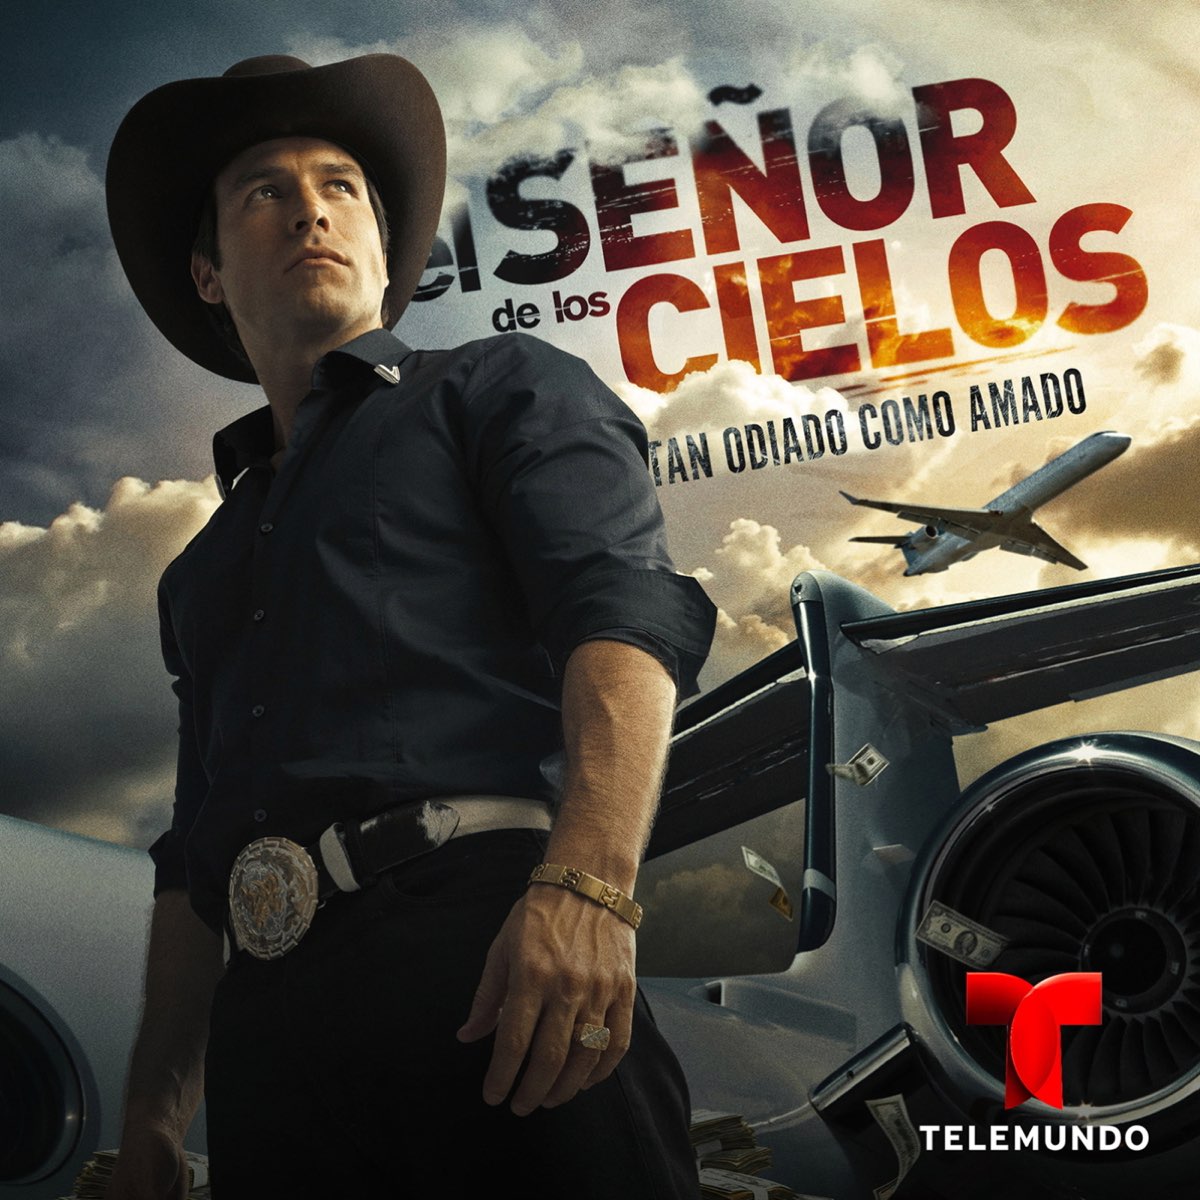 ‎El Jefe de Todos - Single - Album by El Señor de Los Cielos - Apple Music